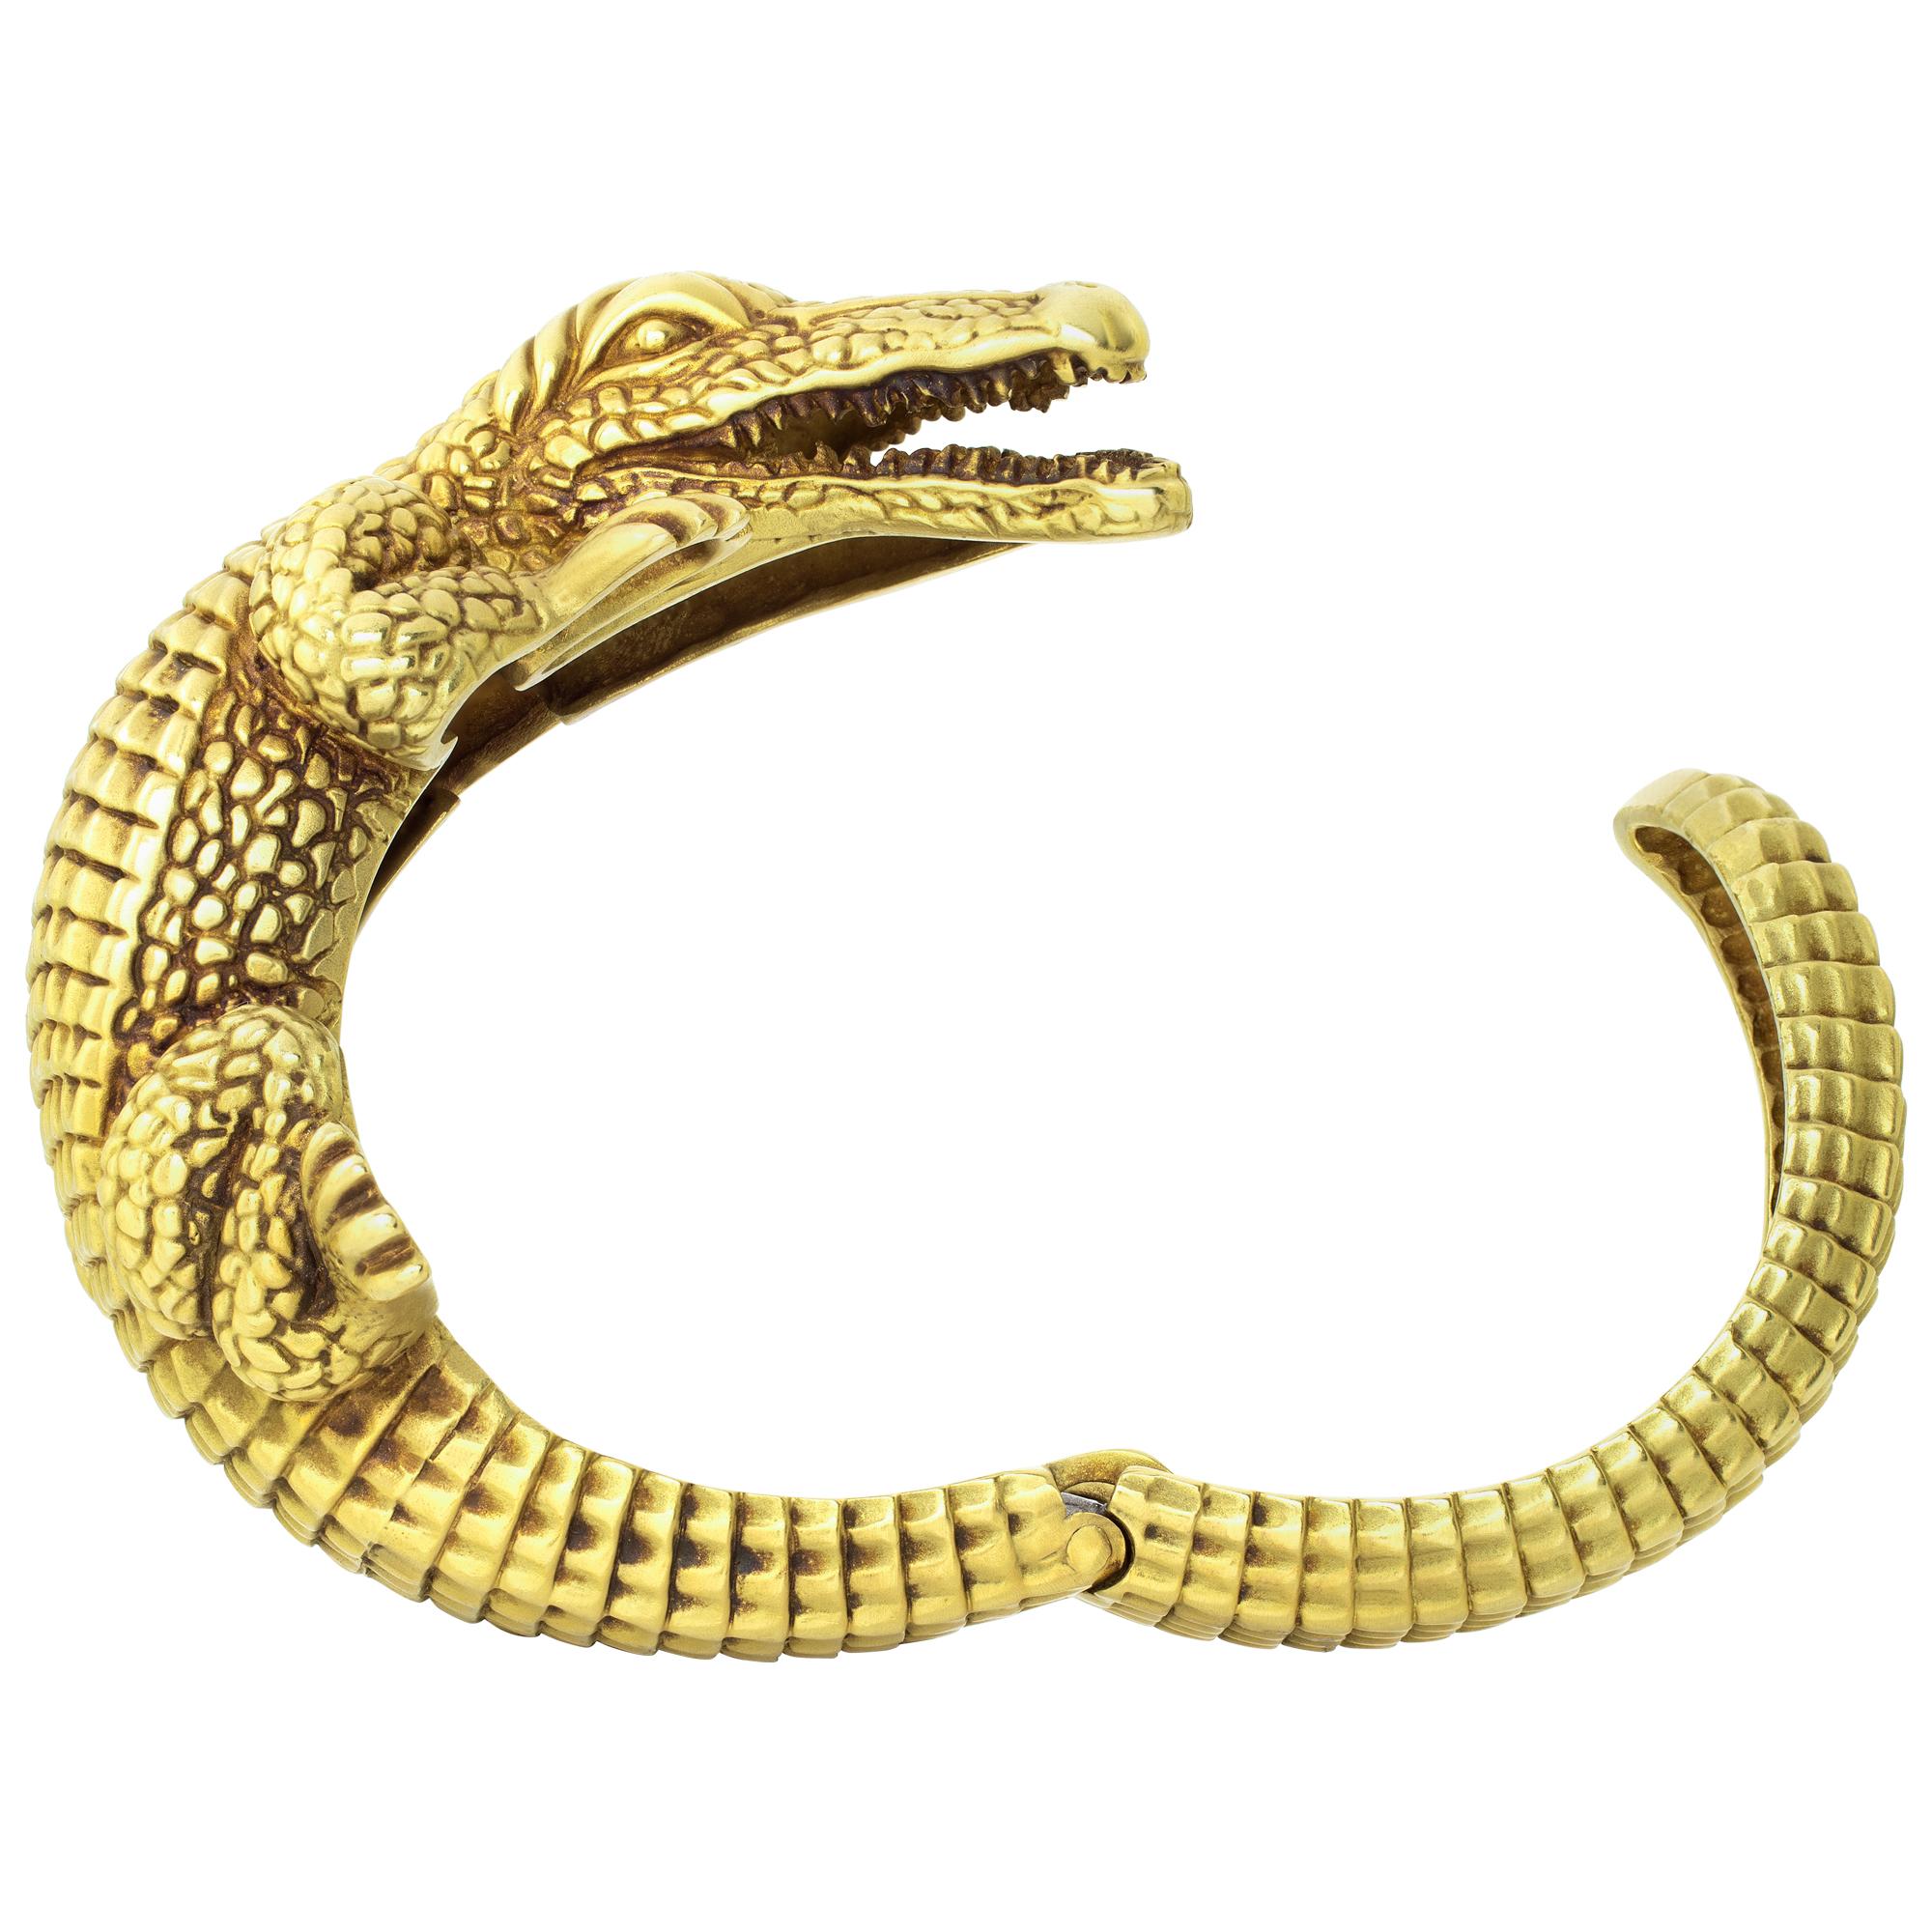 Einzelhandel $38.000 Barry Kieselstein Corde Alligator Manschettenarmband in 18k Gelbgold. Der kultige Alligator von Kieselstein-Cord ist ein Look, der nie aus der Mode kommen wird. Dieses wilde Manschettenarmband ist aus mattem Gelbgold gefertigt